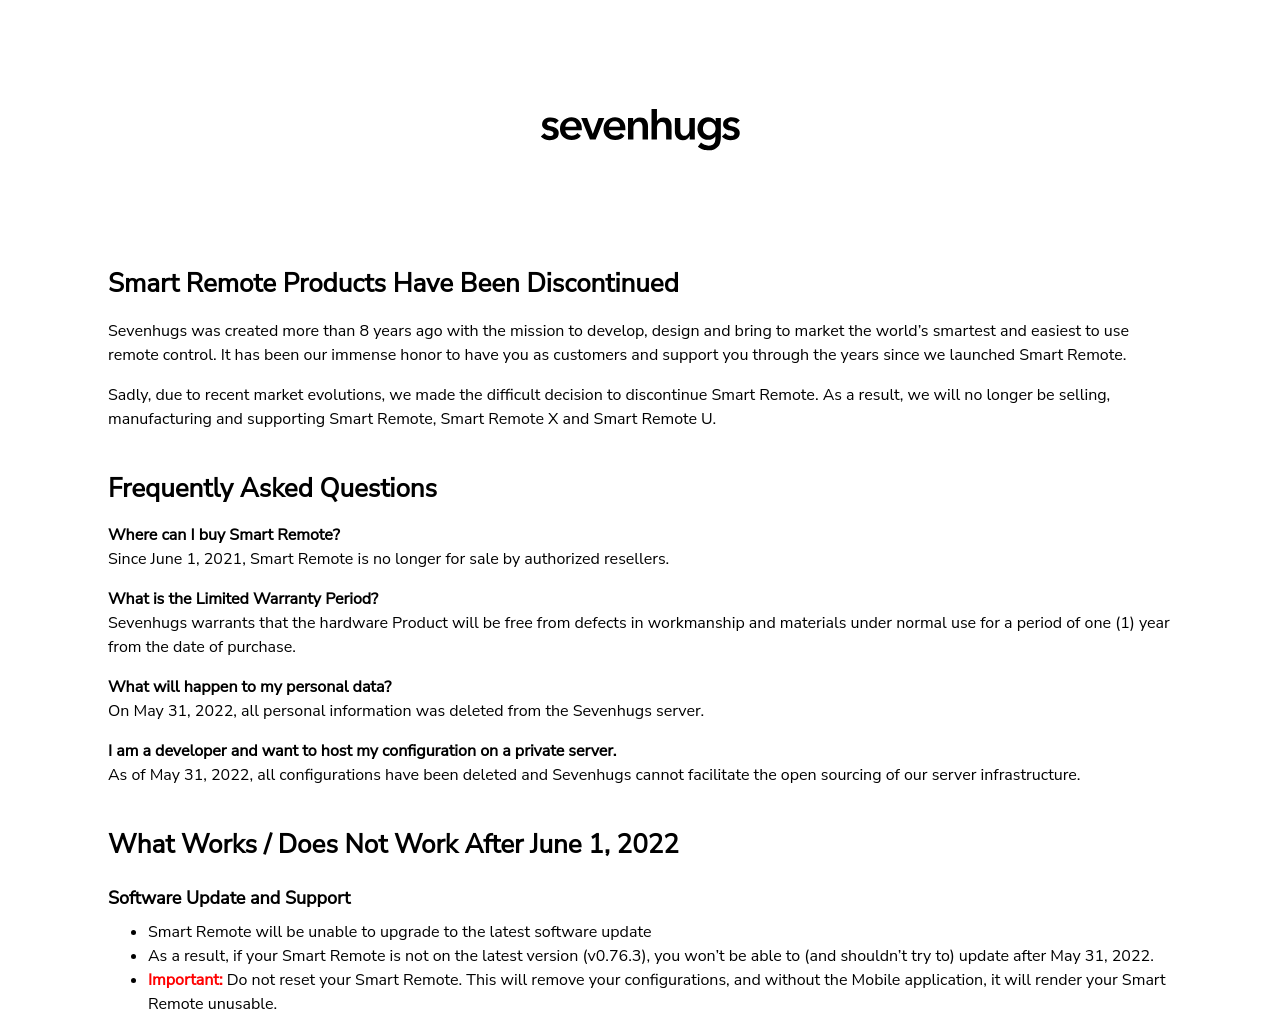 sevenhugs.com